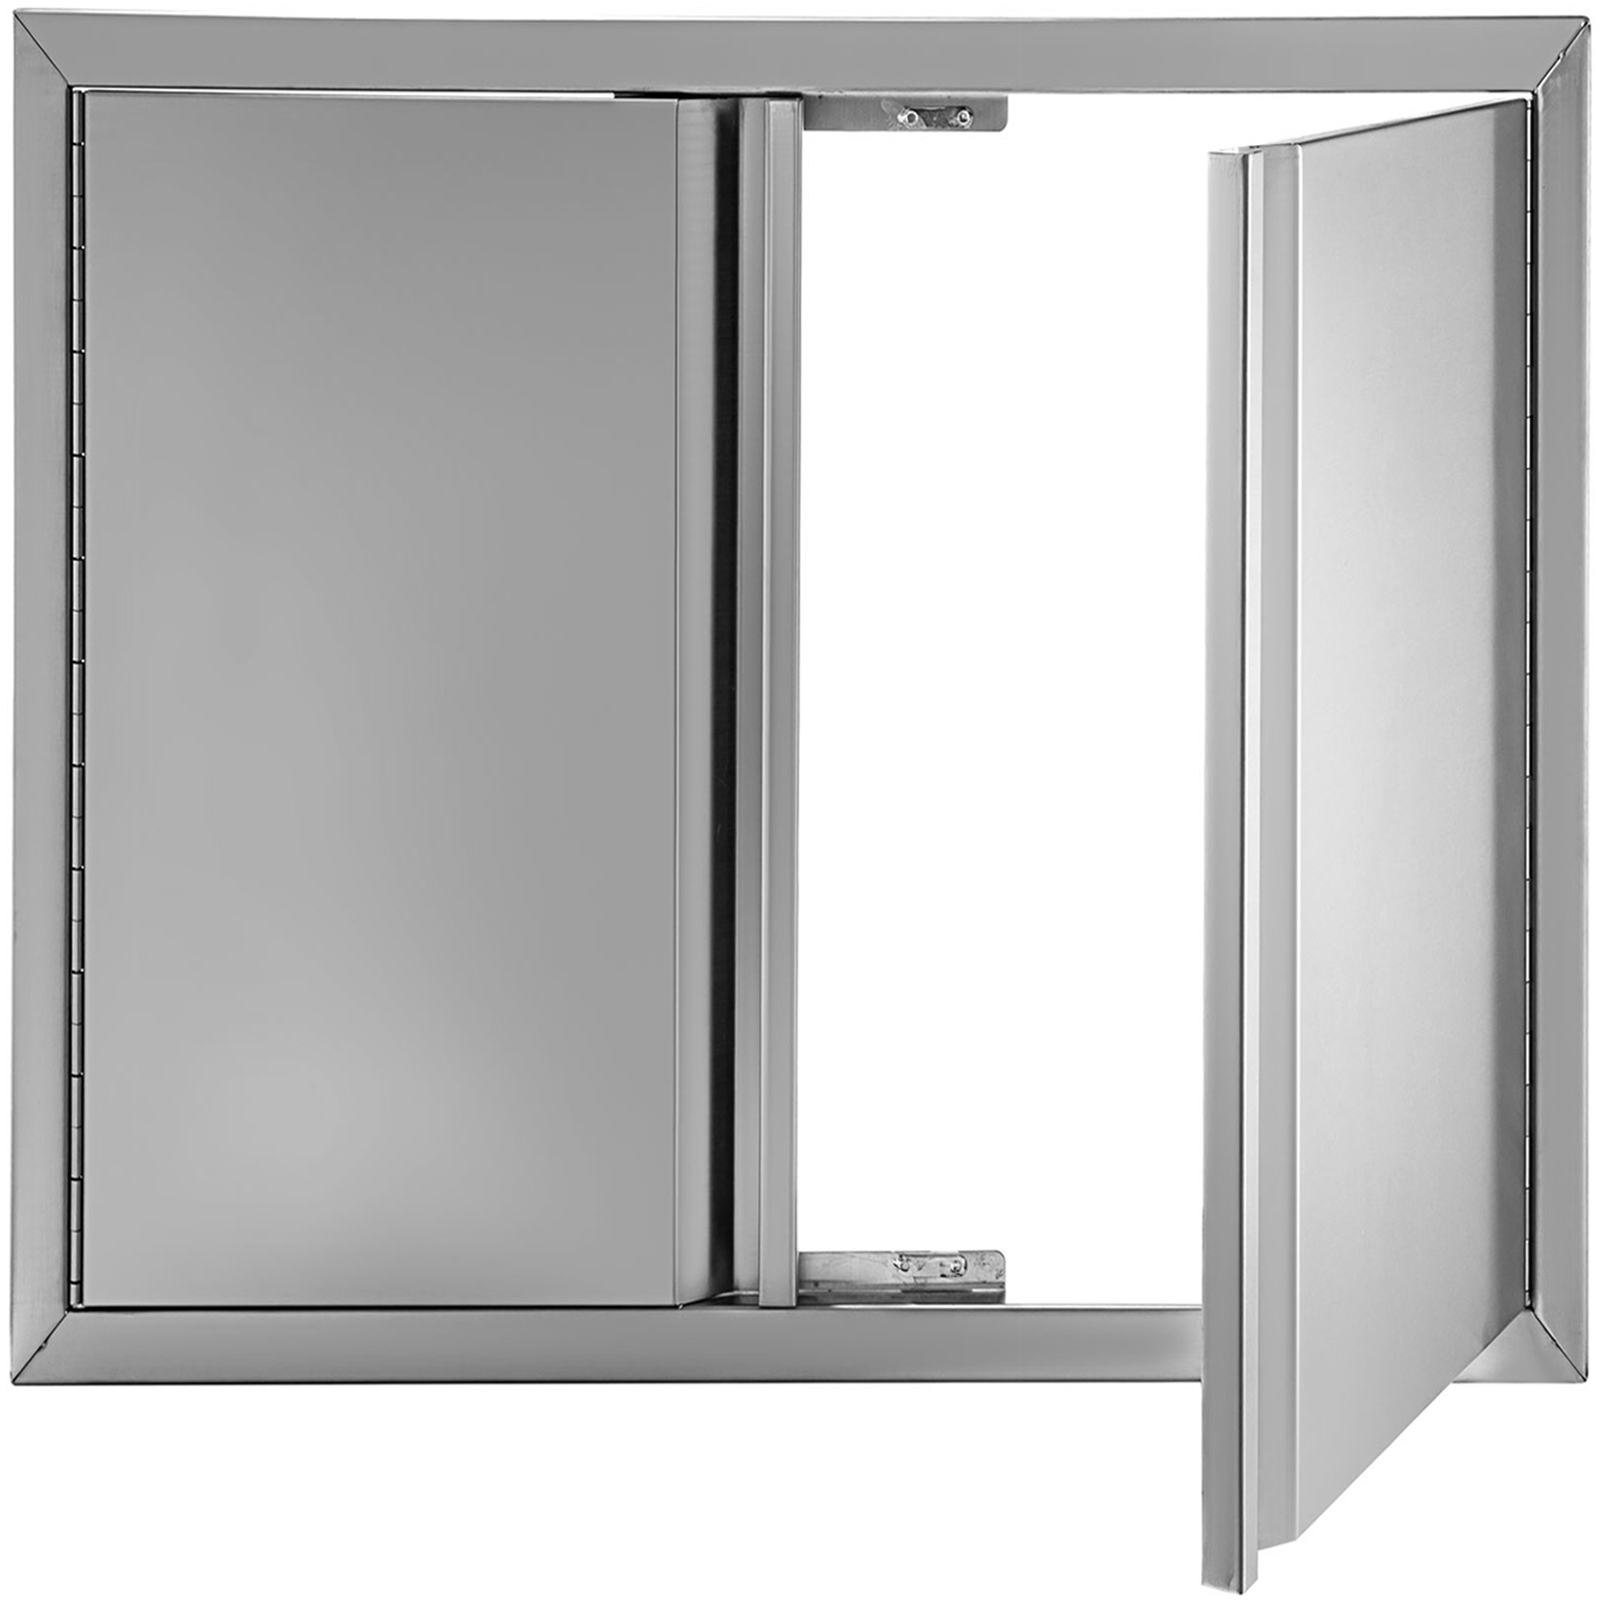 BBQ Access Door Outdoor Kitchen Doors Stainless Steel Single Double Stainless Steel Outdoor Kitchen Doors